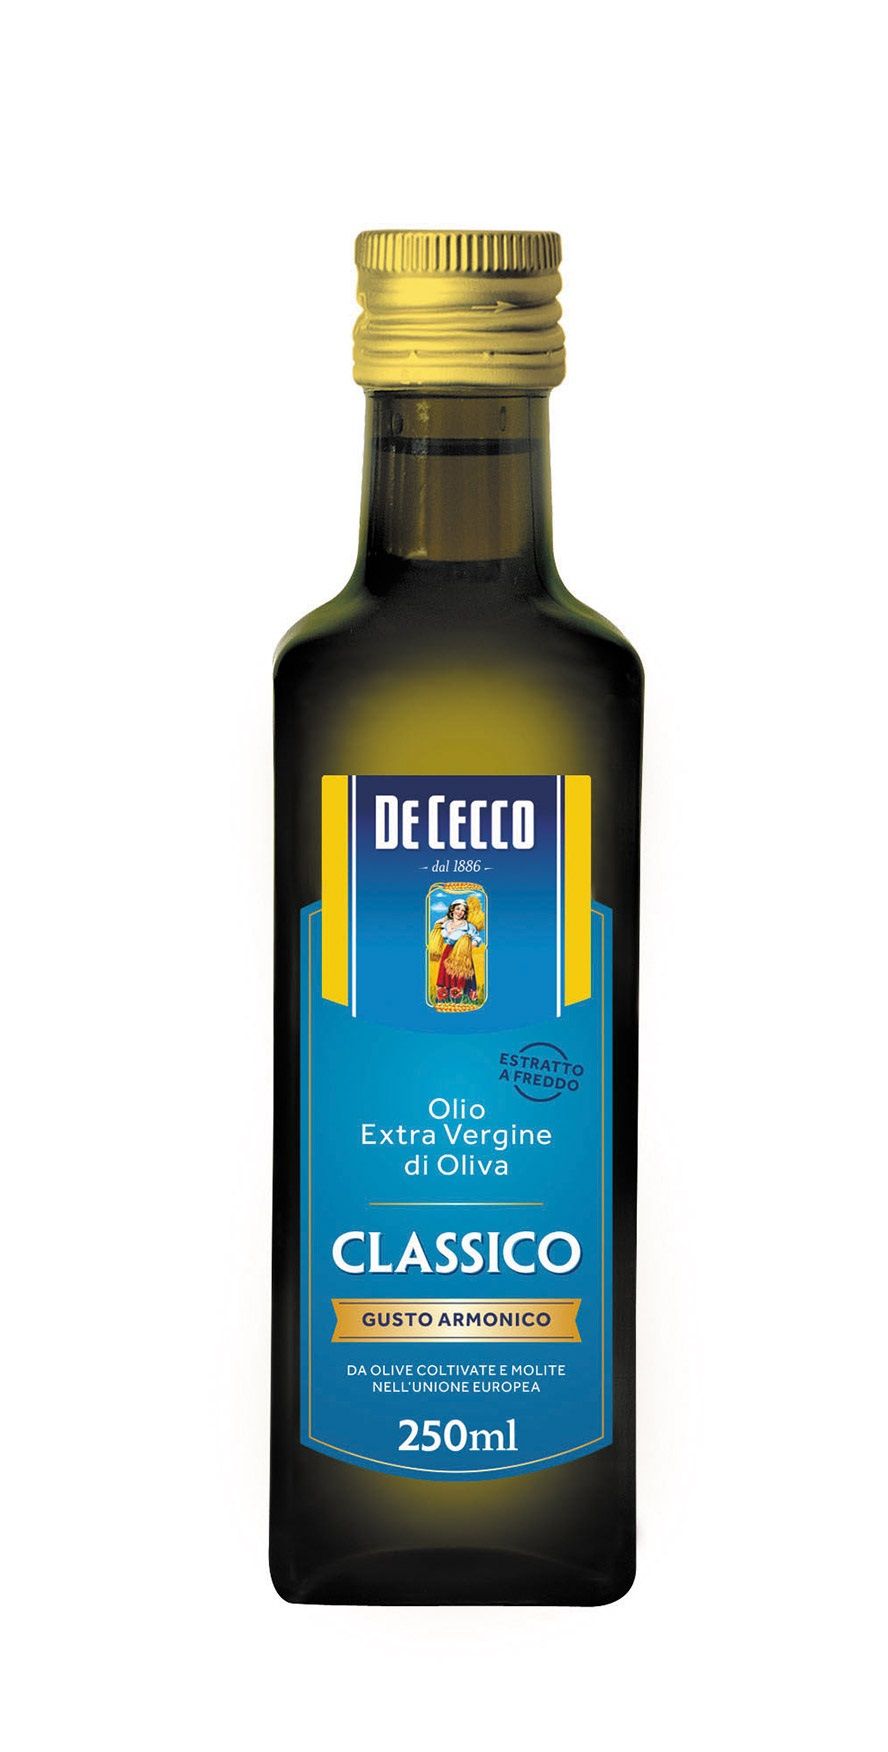 De cecco оливковое масло купить